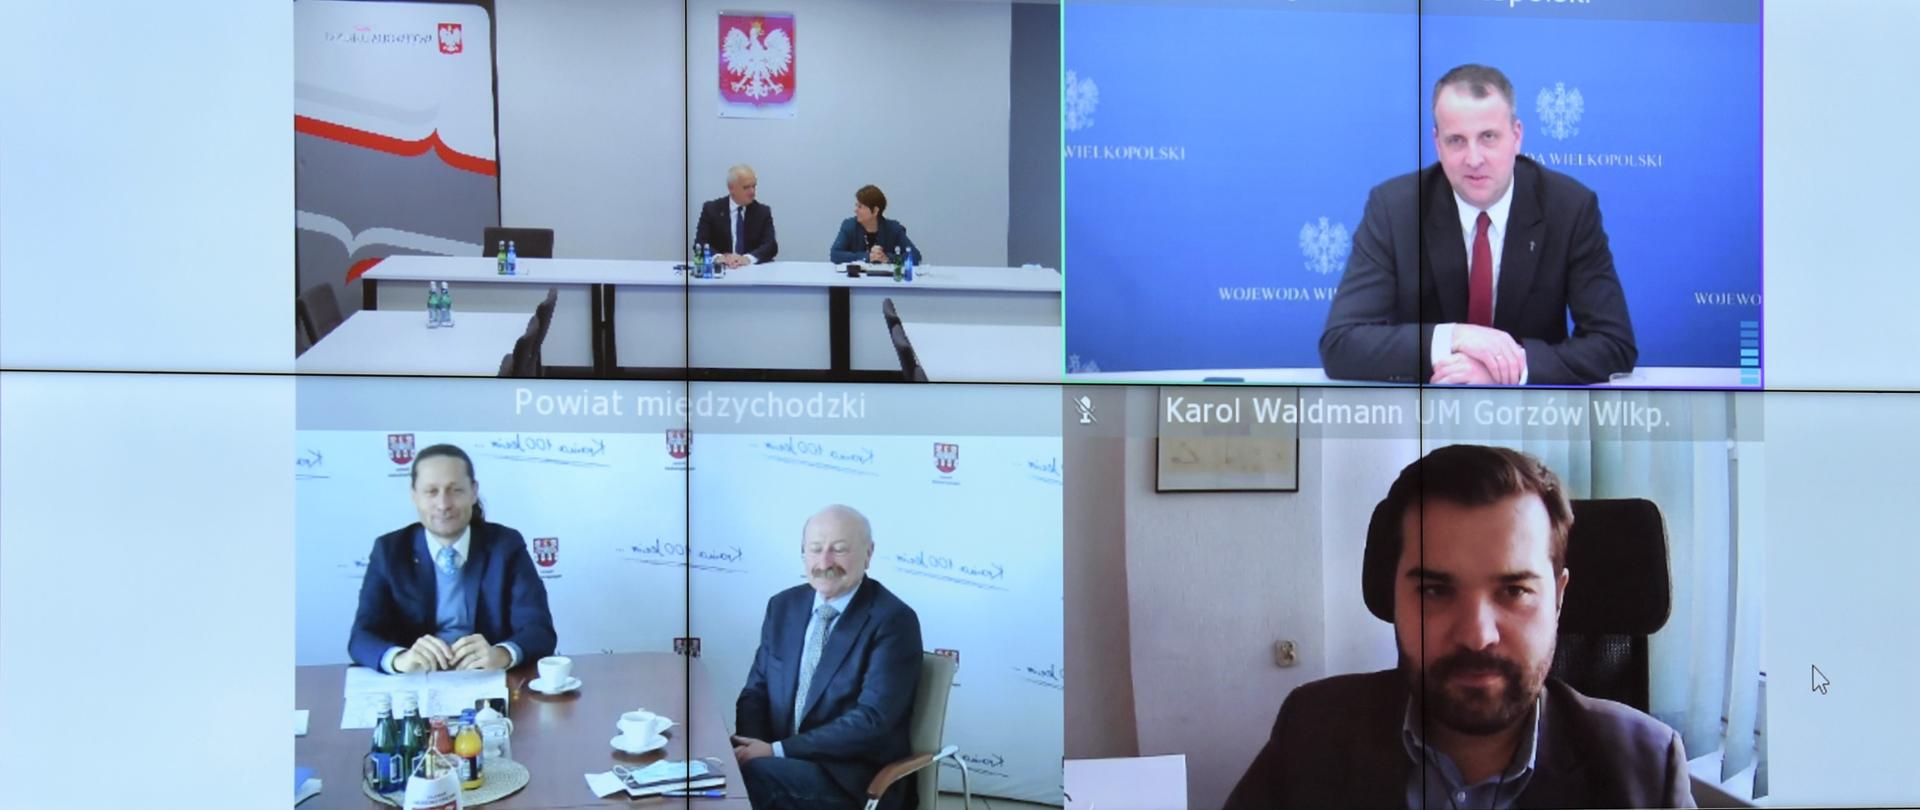 5 ekranów wyświetlanych na wspólnej planszy, widać na nich uczestników wideokonferencji - wojewodę lubuskiego i wielkopolskiego, starostę międzychodzkiego, wiceprezydent Gorzowa oraz pracownika UM Gorzów